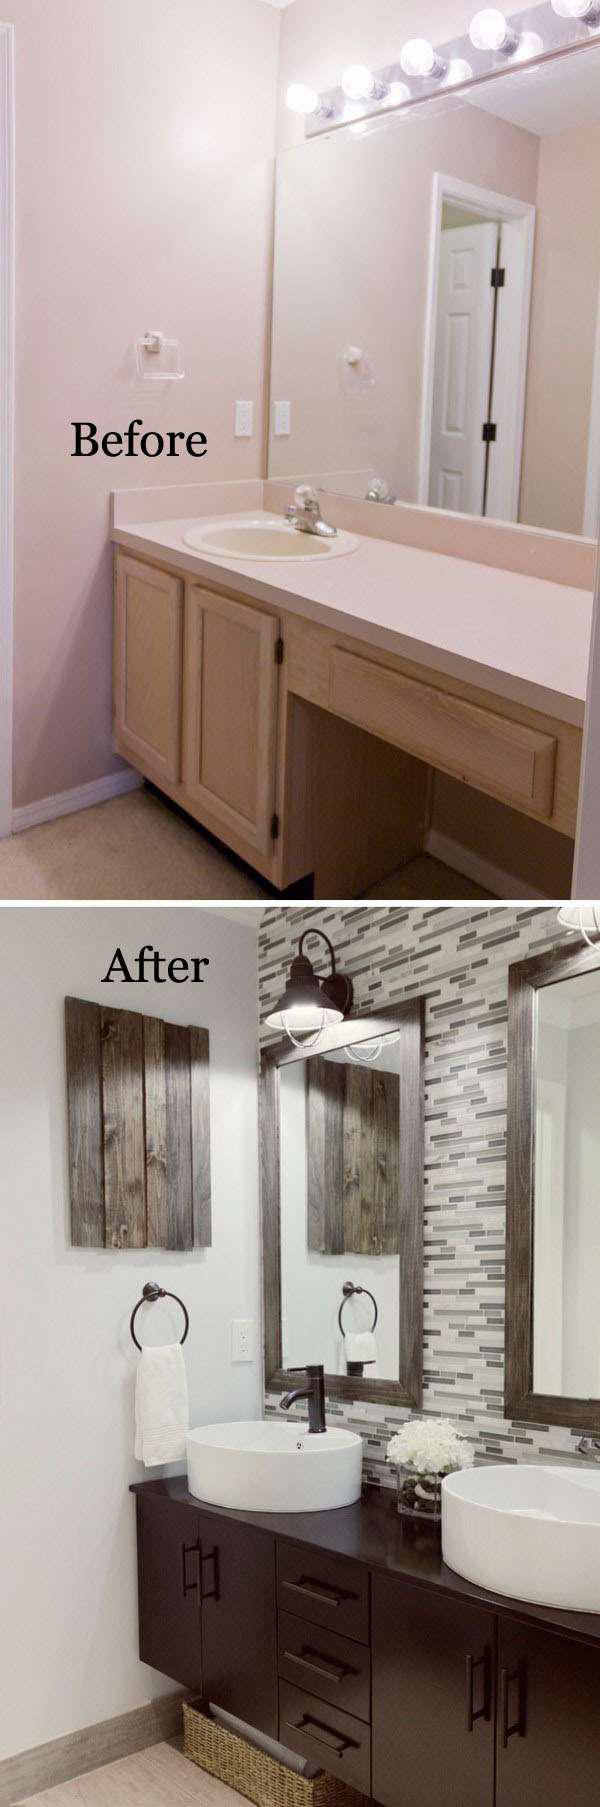 16 идей преображения старой ванной комнаты 18 | Дока-Мастер